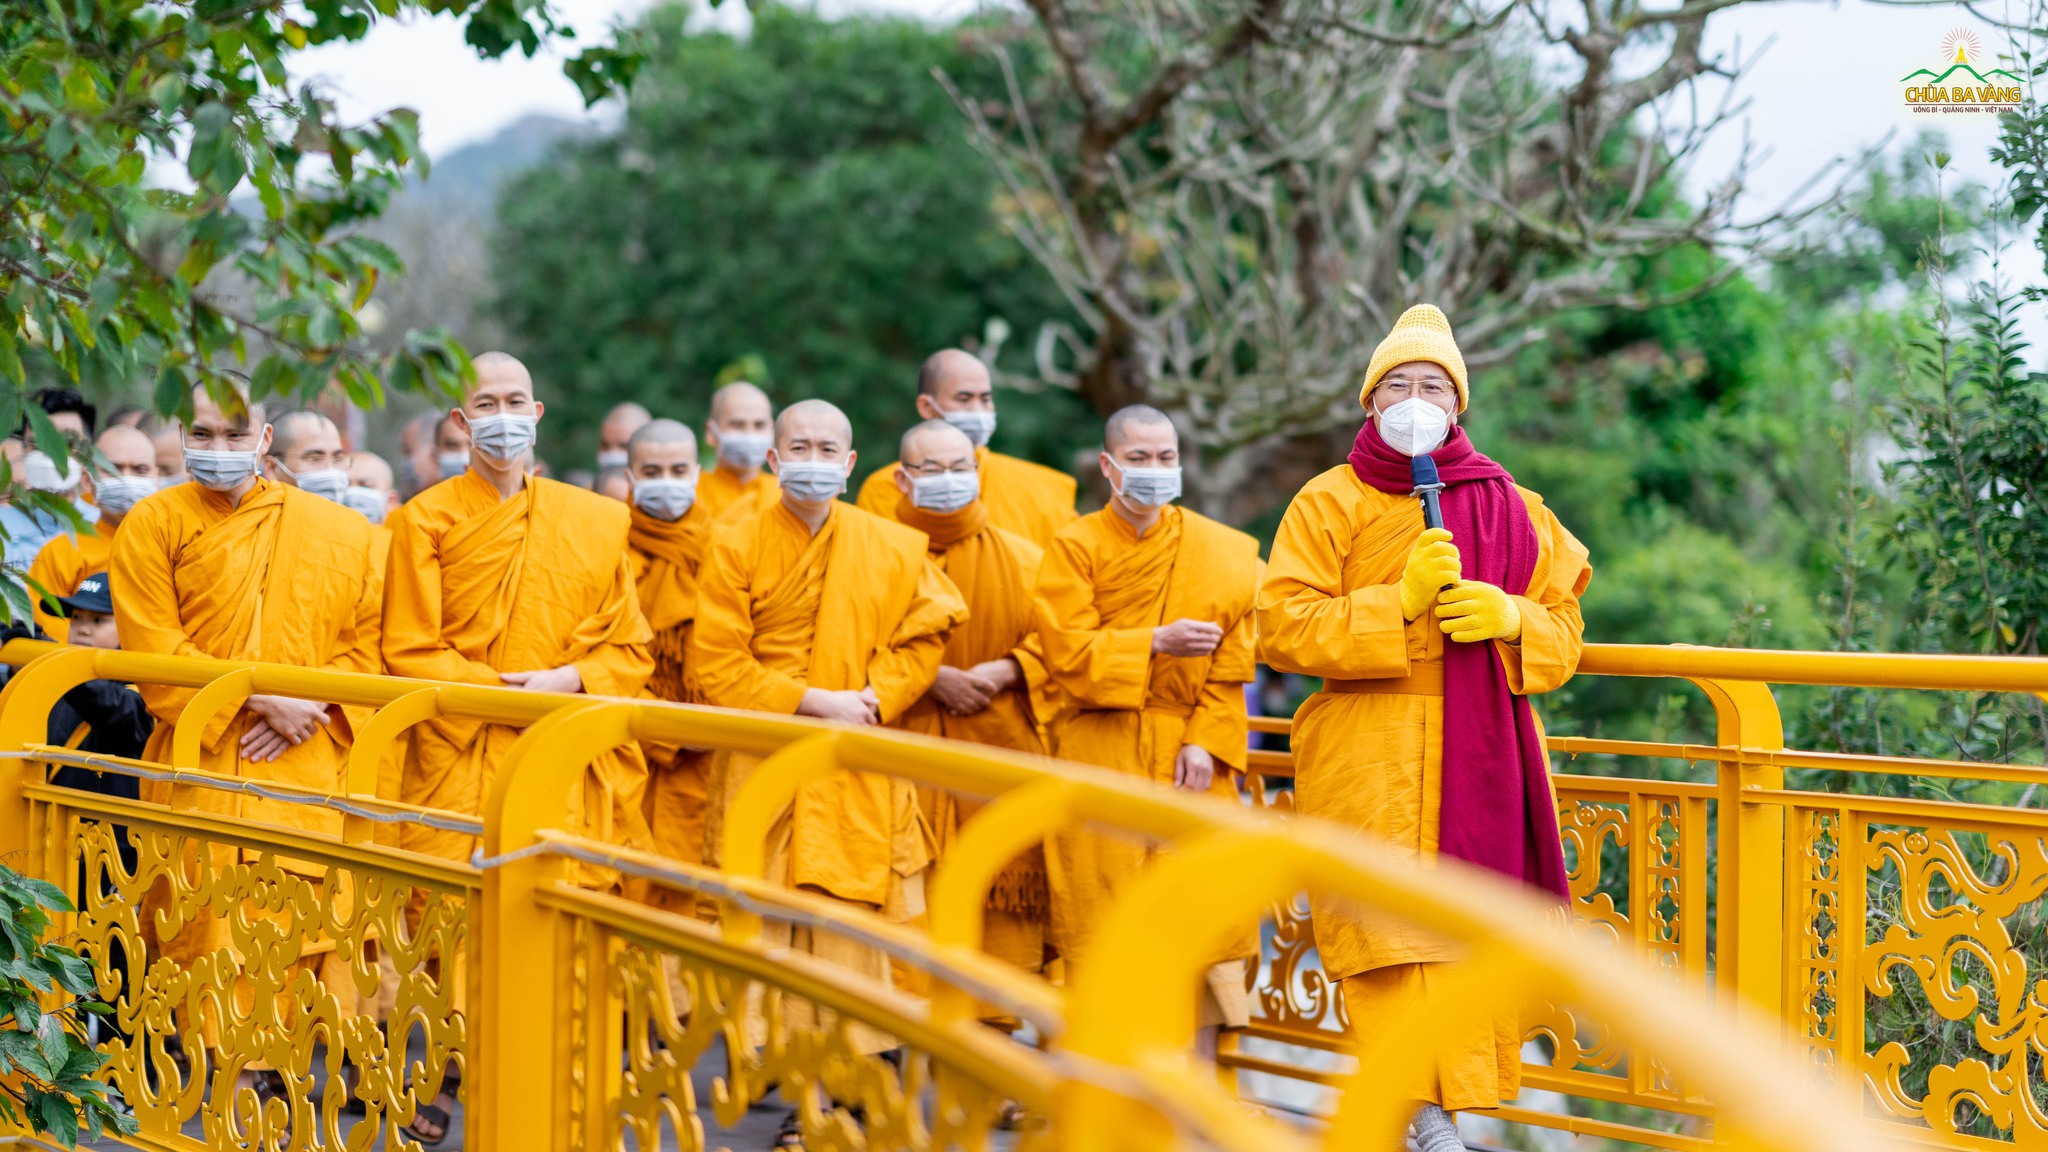 Sư Phụ cùng chư Tăng hoan hỷ tham quan cây cầu vàng - một địa điểm mới tại chùa Ba Vàng trong dịp Tết năm nay